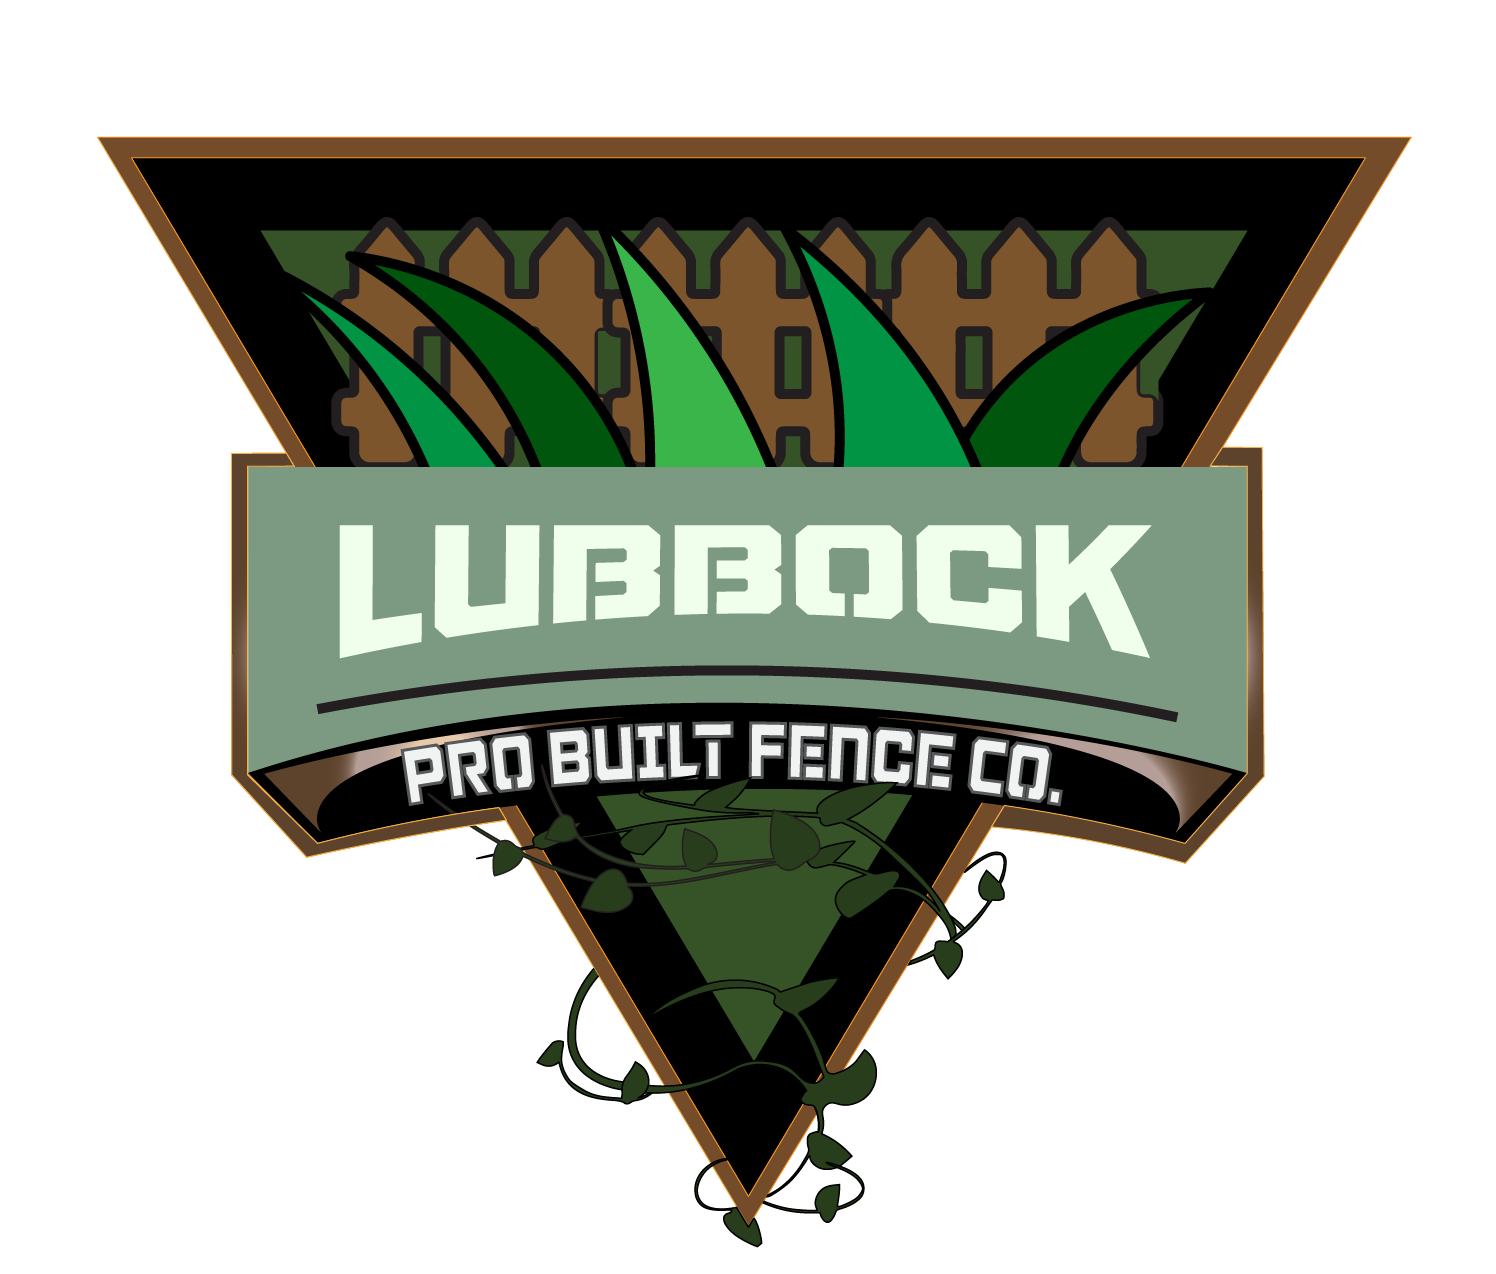 pro built lubbock fence co.